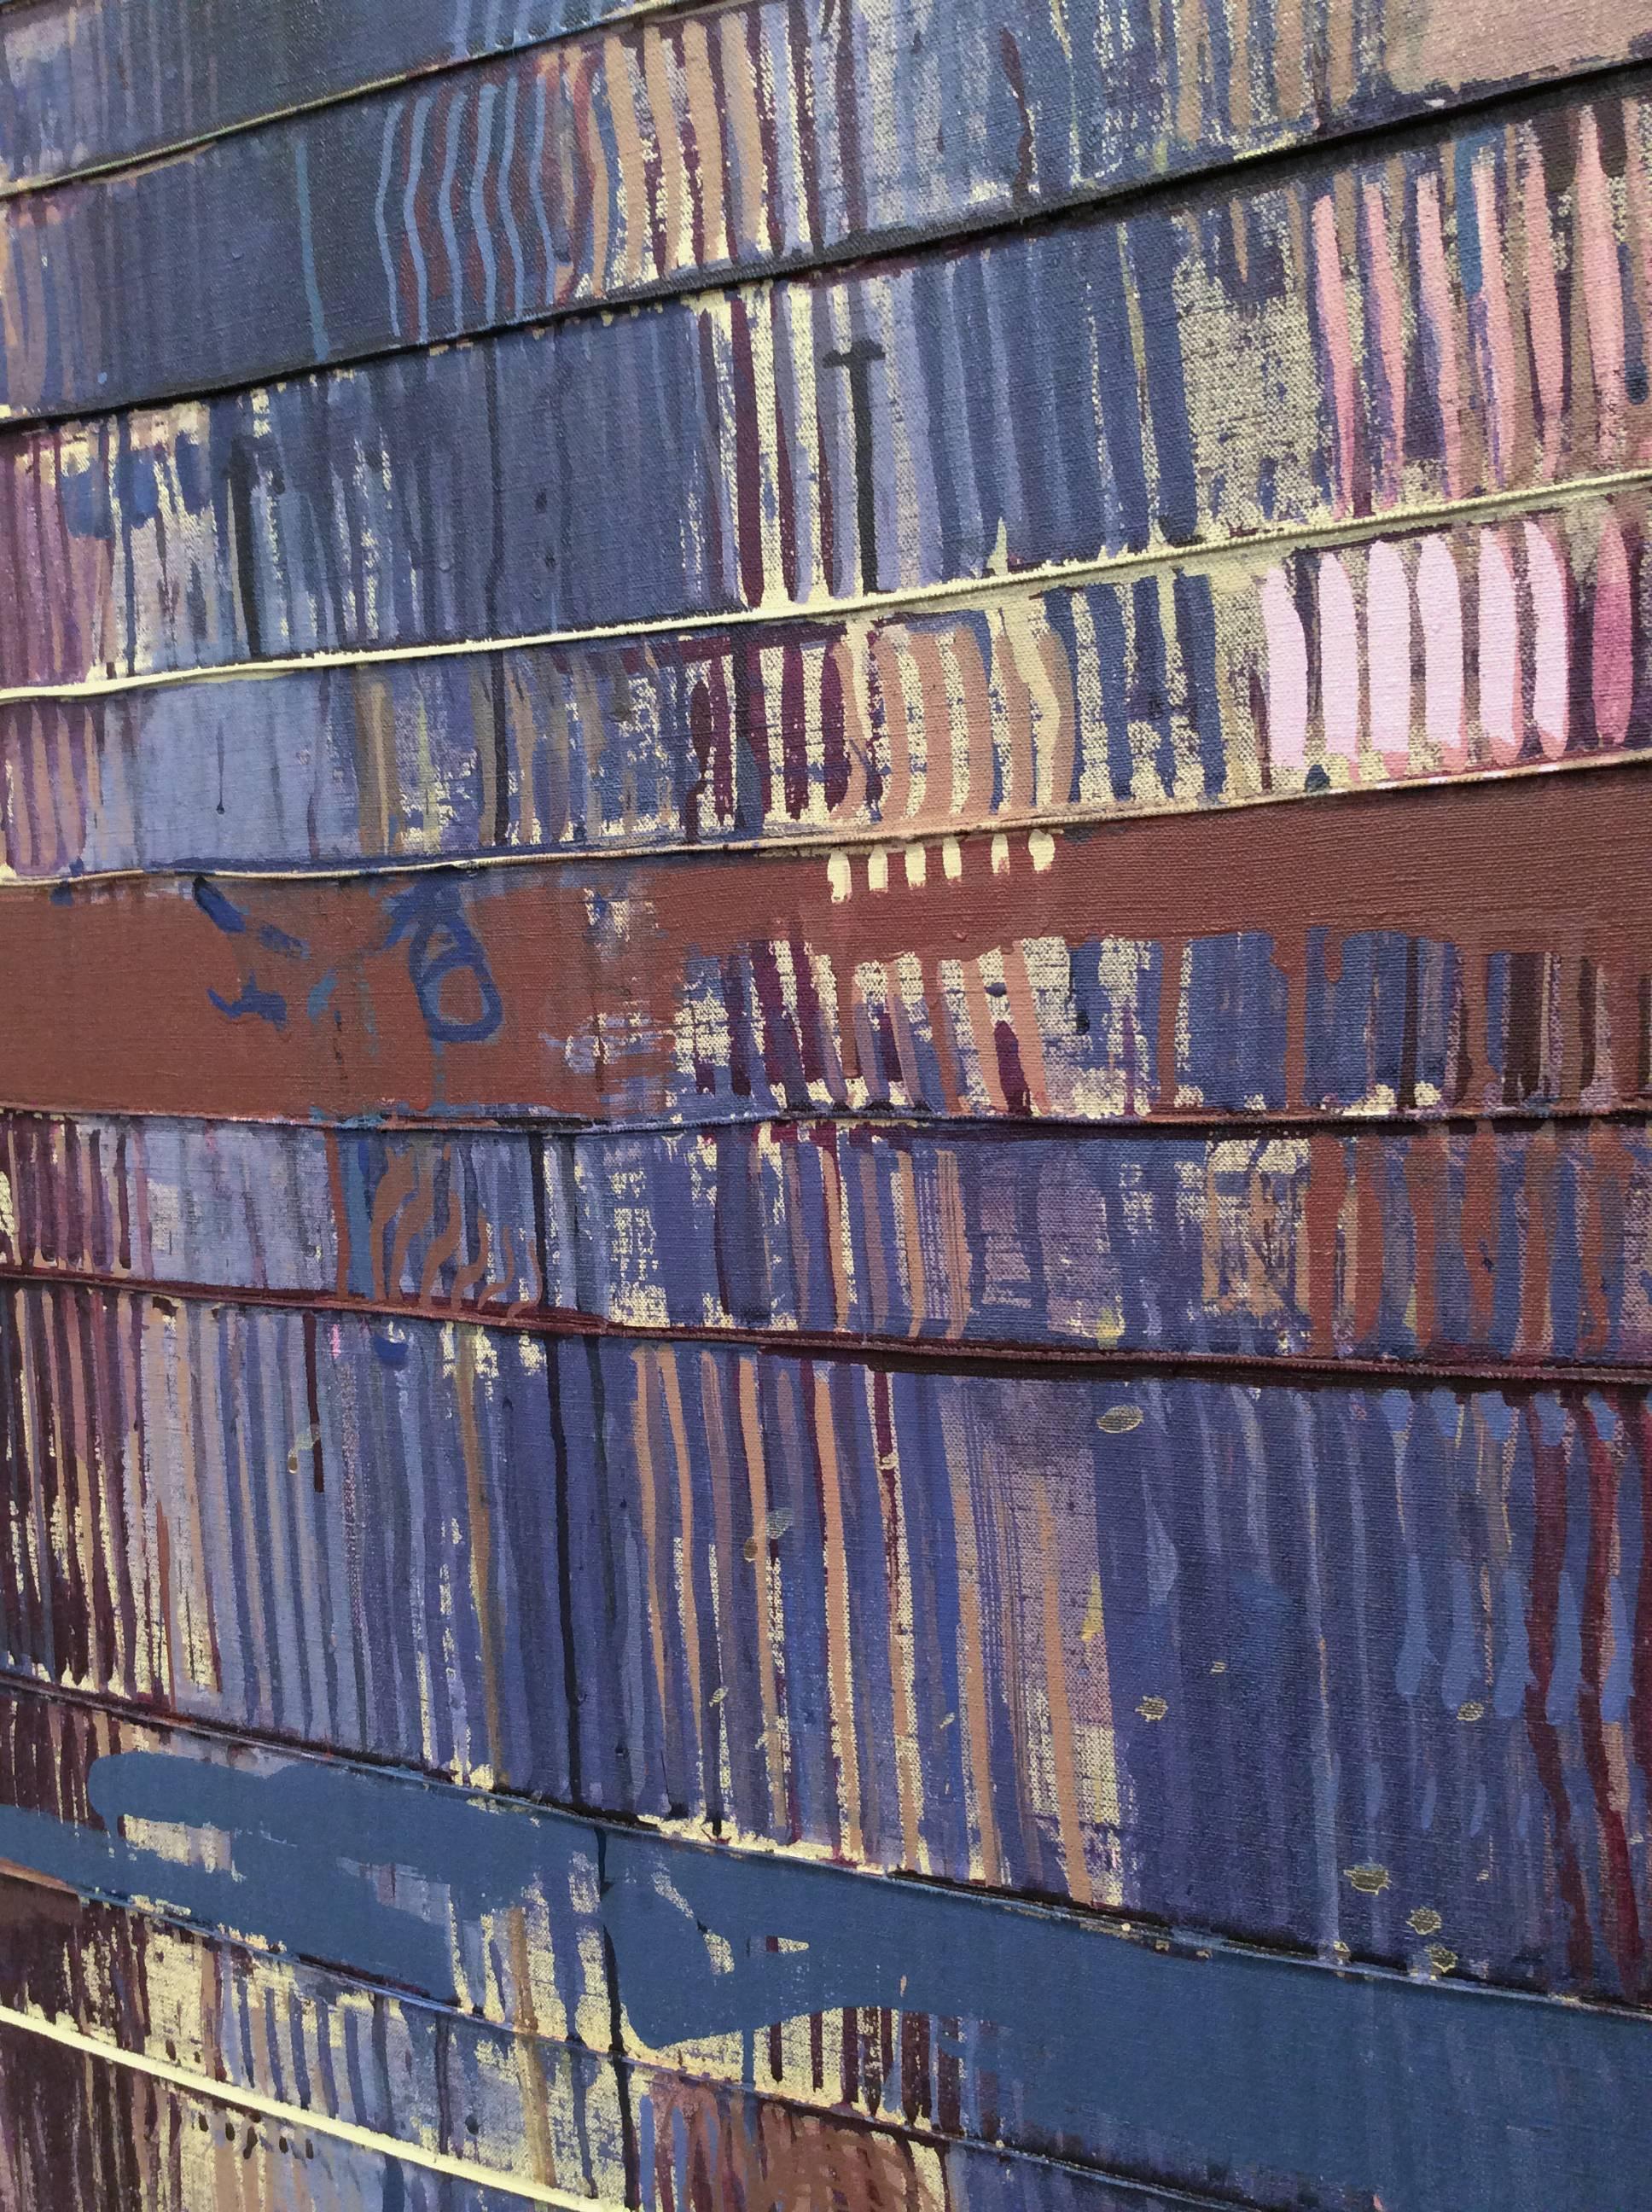 60 x 72 x 1,5 Zoll
acryl auf Leinwand
Dieses Gemälde wird von der Carrie Haddad Gallery in Hudson, NY, angeboten.

Tirta gangga bedeutet WASSERPALAST und ist ein ehemaliger Königspalast im Osten Balis, Indonesien, etwa 5 Kilometer von Karangasem